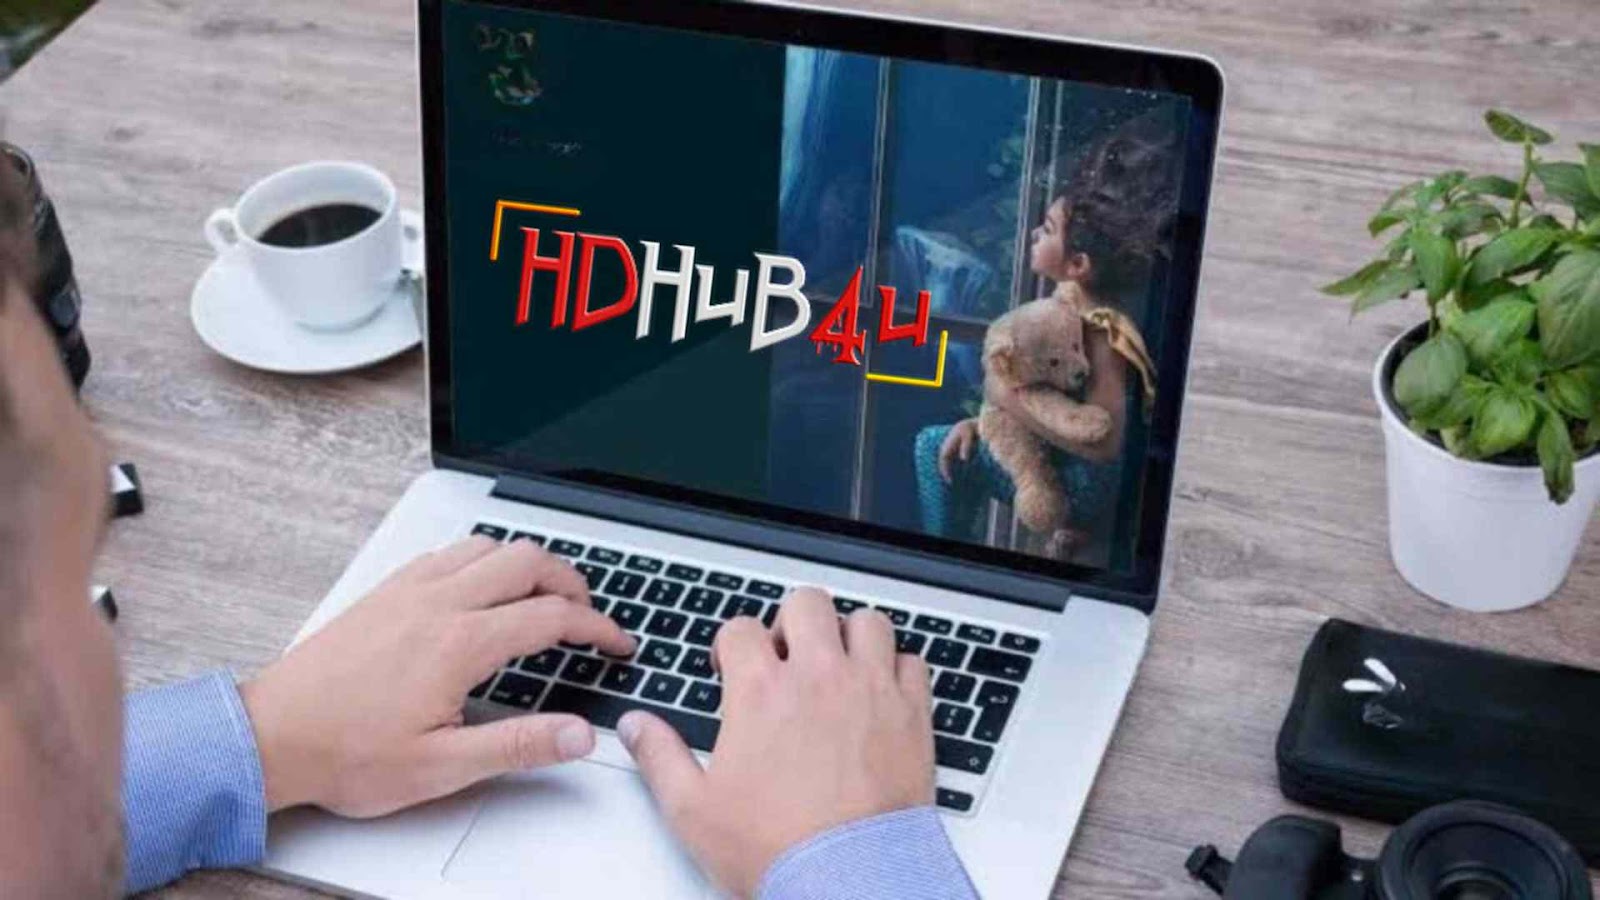 HDHub4U